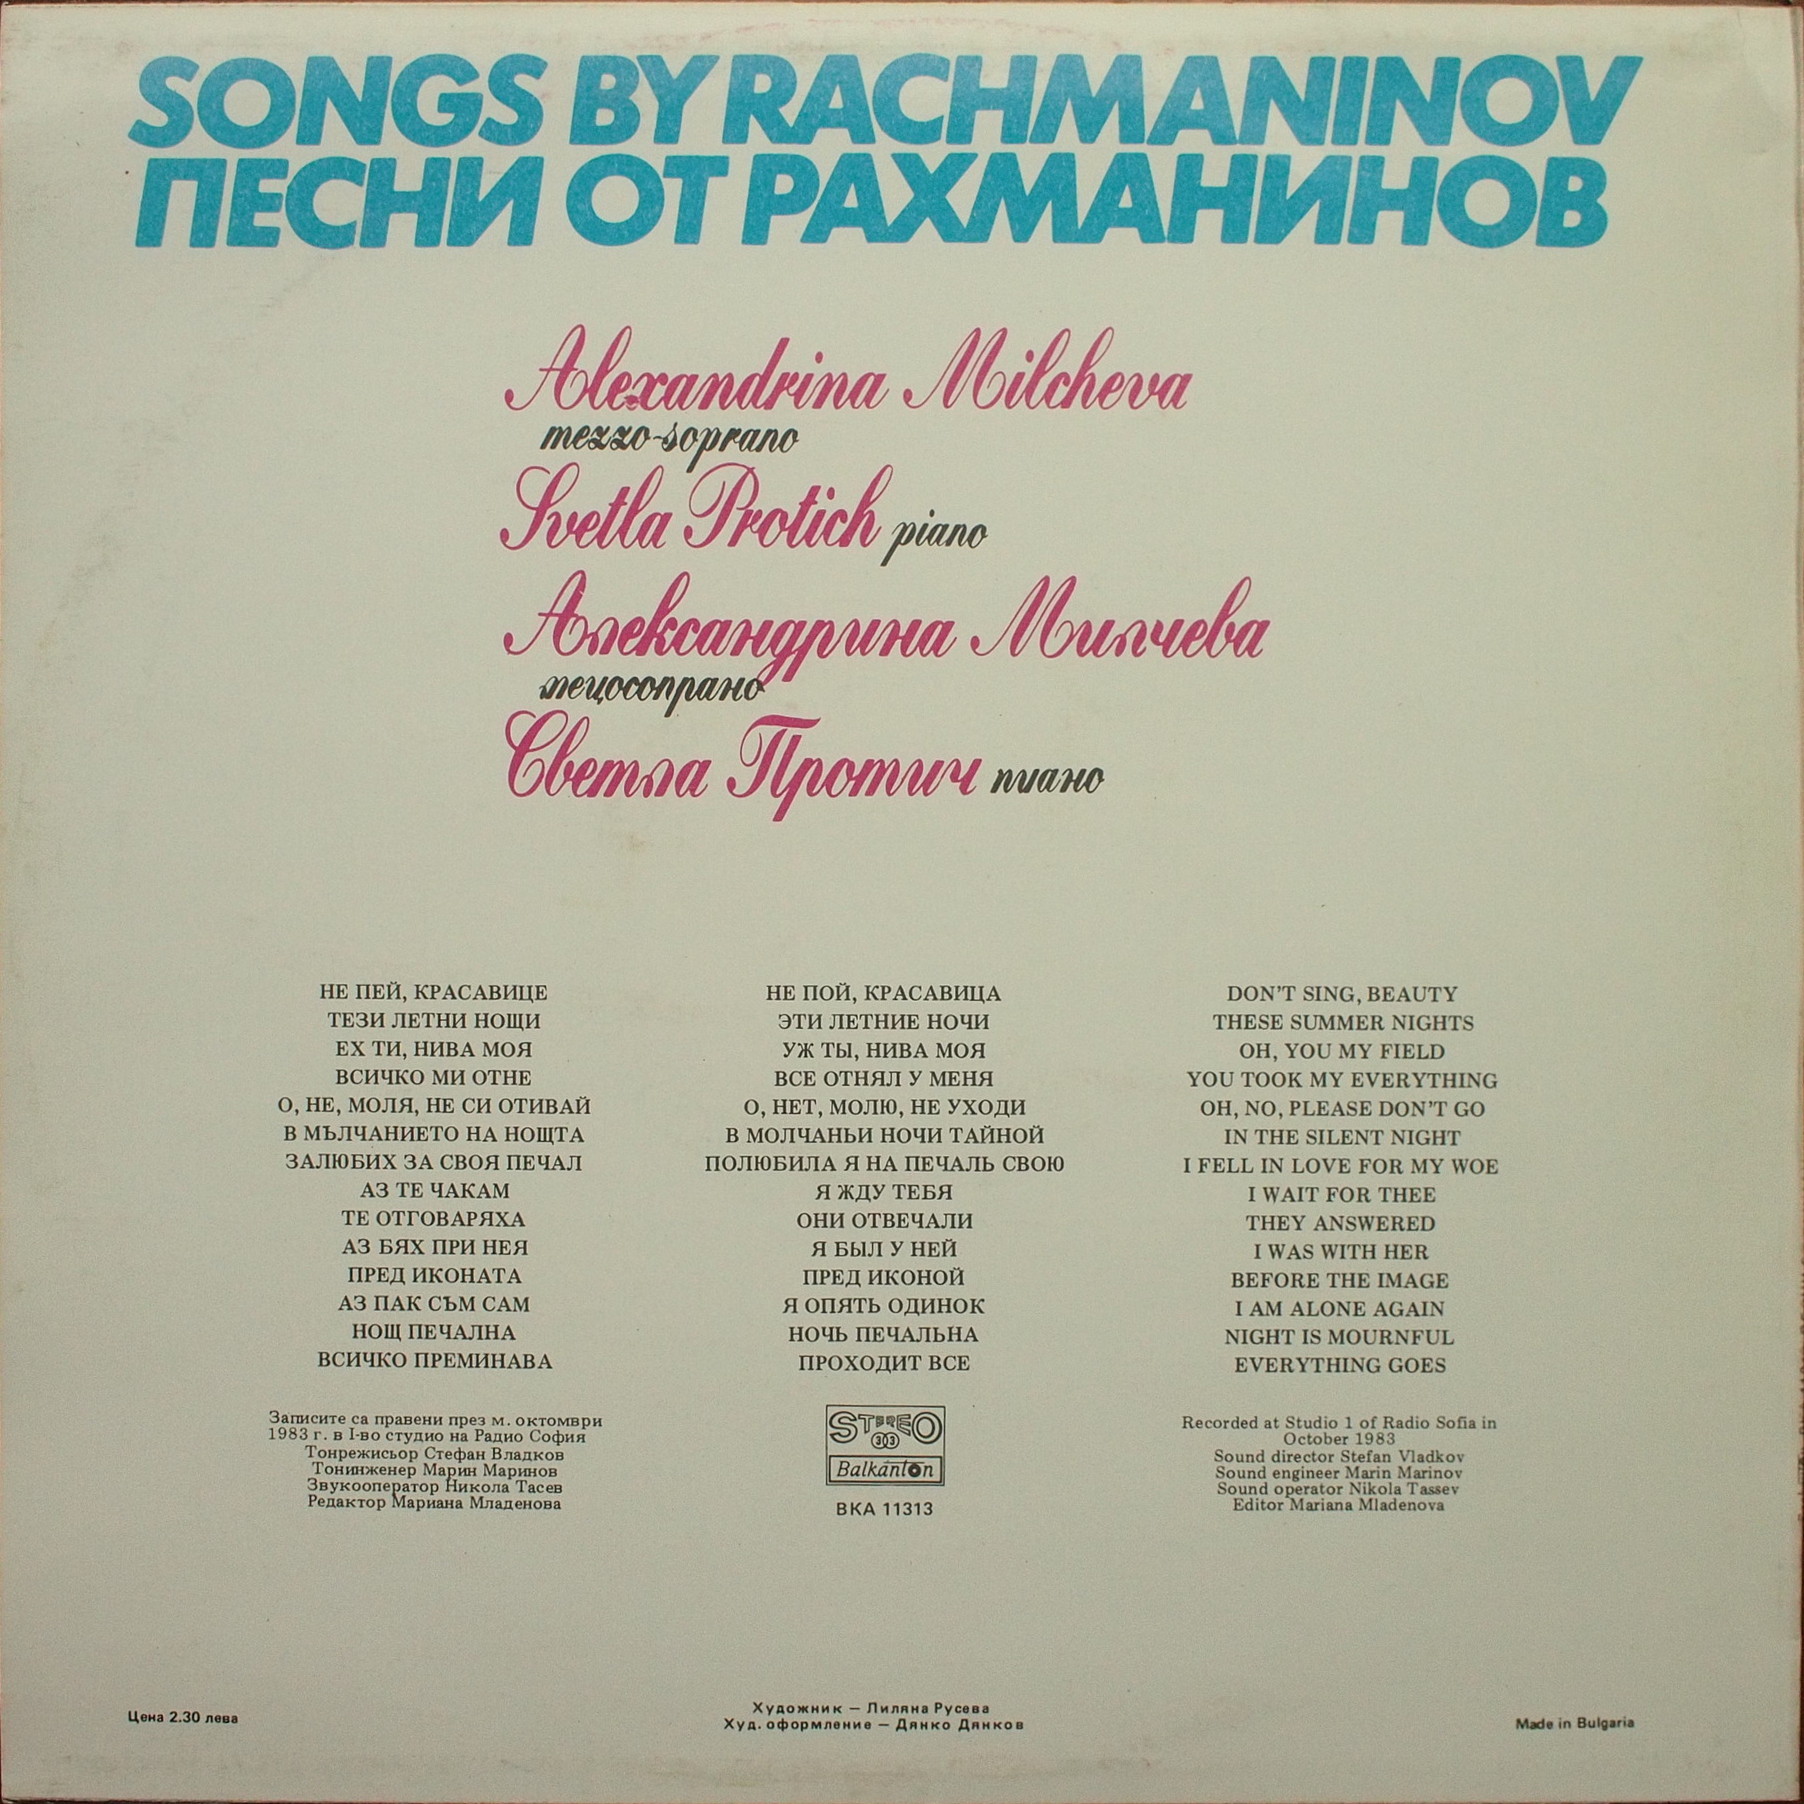 Песни от Рахманинов. Изпълнява Александрина Милчева - мецосопрано; съпровожда на пиано Светла Протич